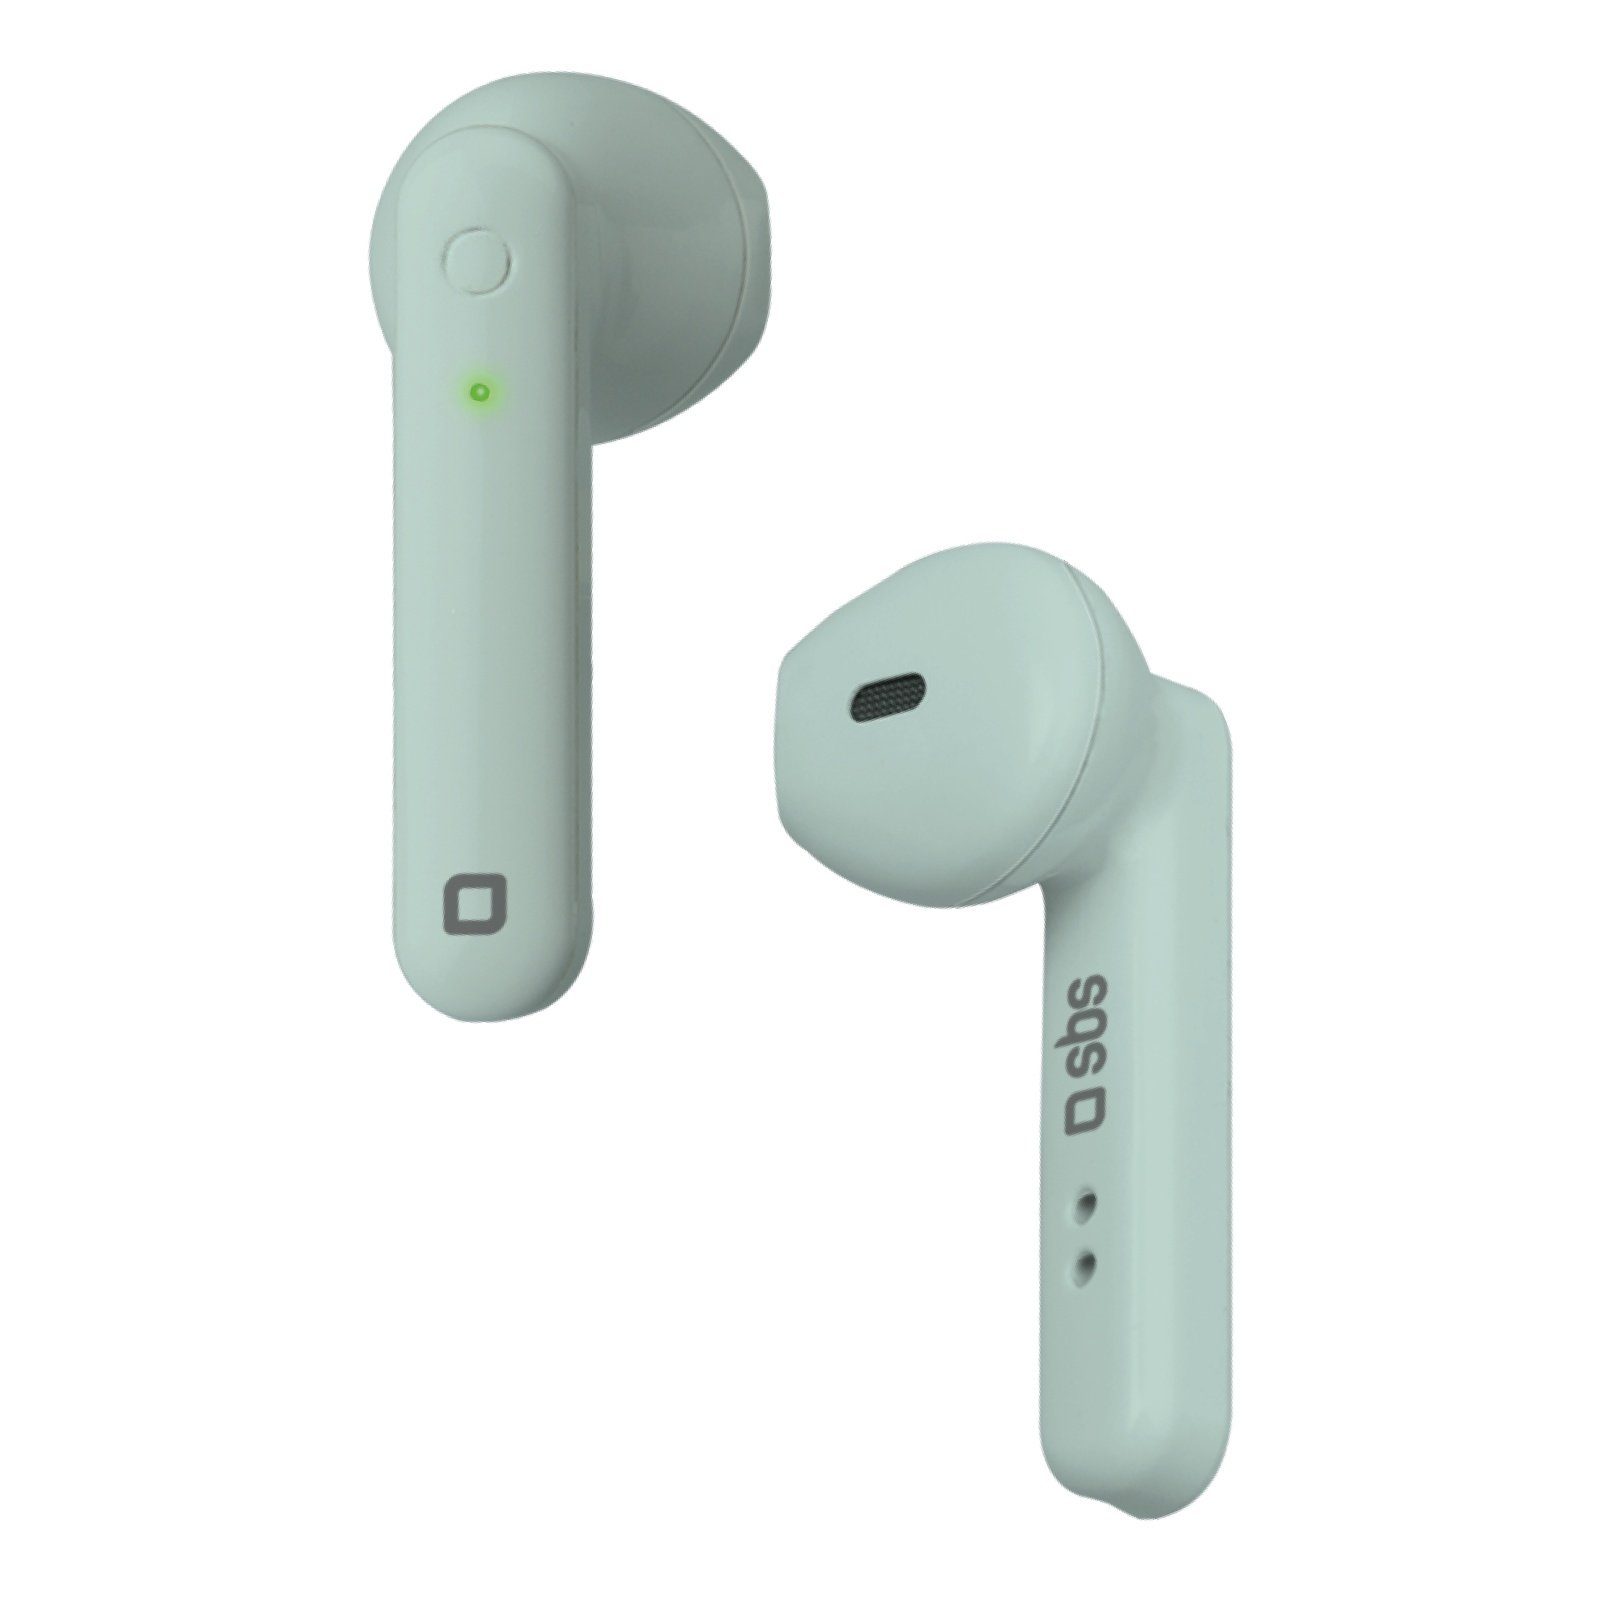 sbs »SBS Bluetooth Kopfhörer - Wireless in Ear Kopfhörer grün mit  Multifunktionstaste für Anrufe & Musik, Ladebox, Bluetooth 5.0« wireless  In-Ear-Kopfhörer online kaufen | OTTO